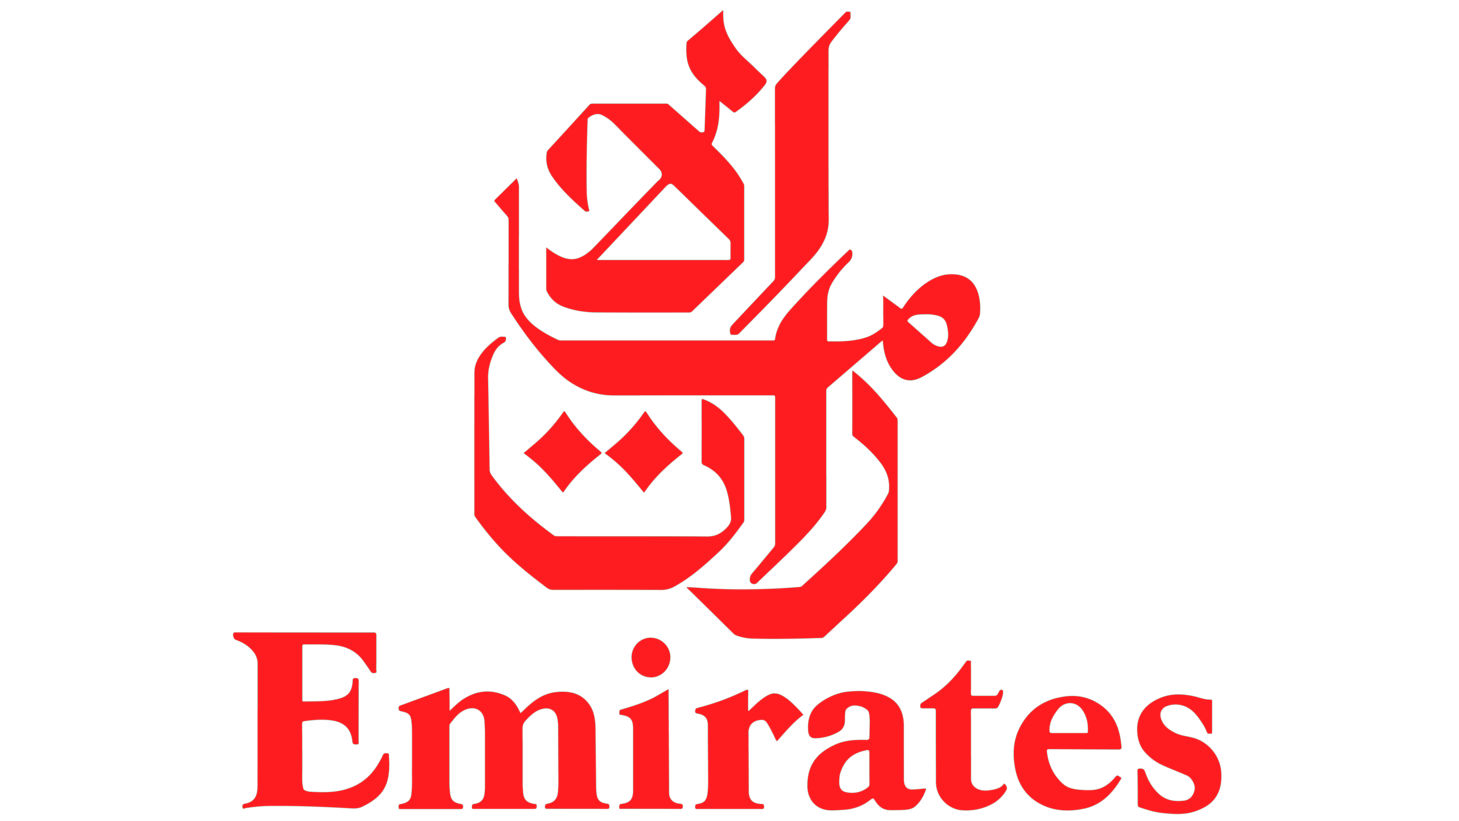 Emirates sign 1985 1999